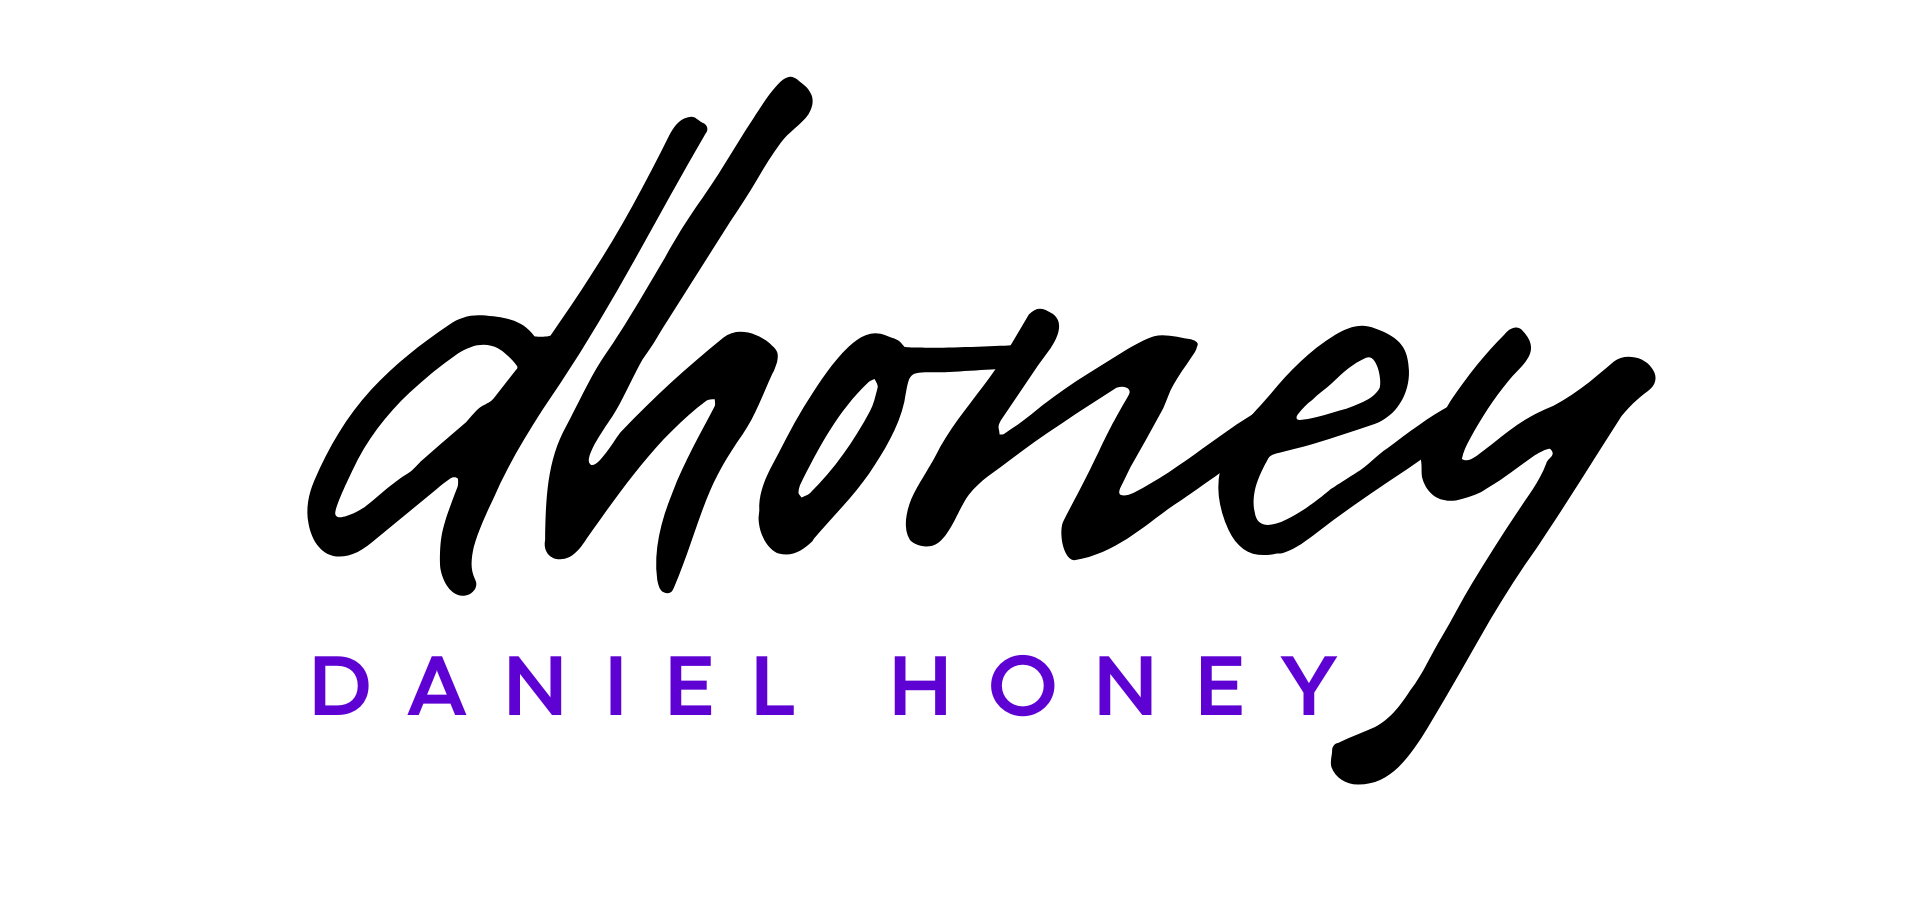 Daniel Honey | Marketing Consultant and Creative Designer